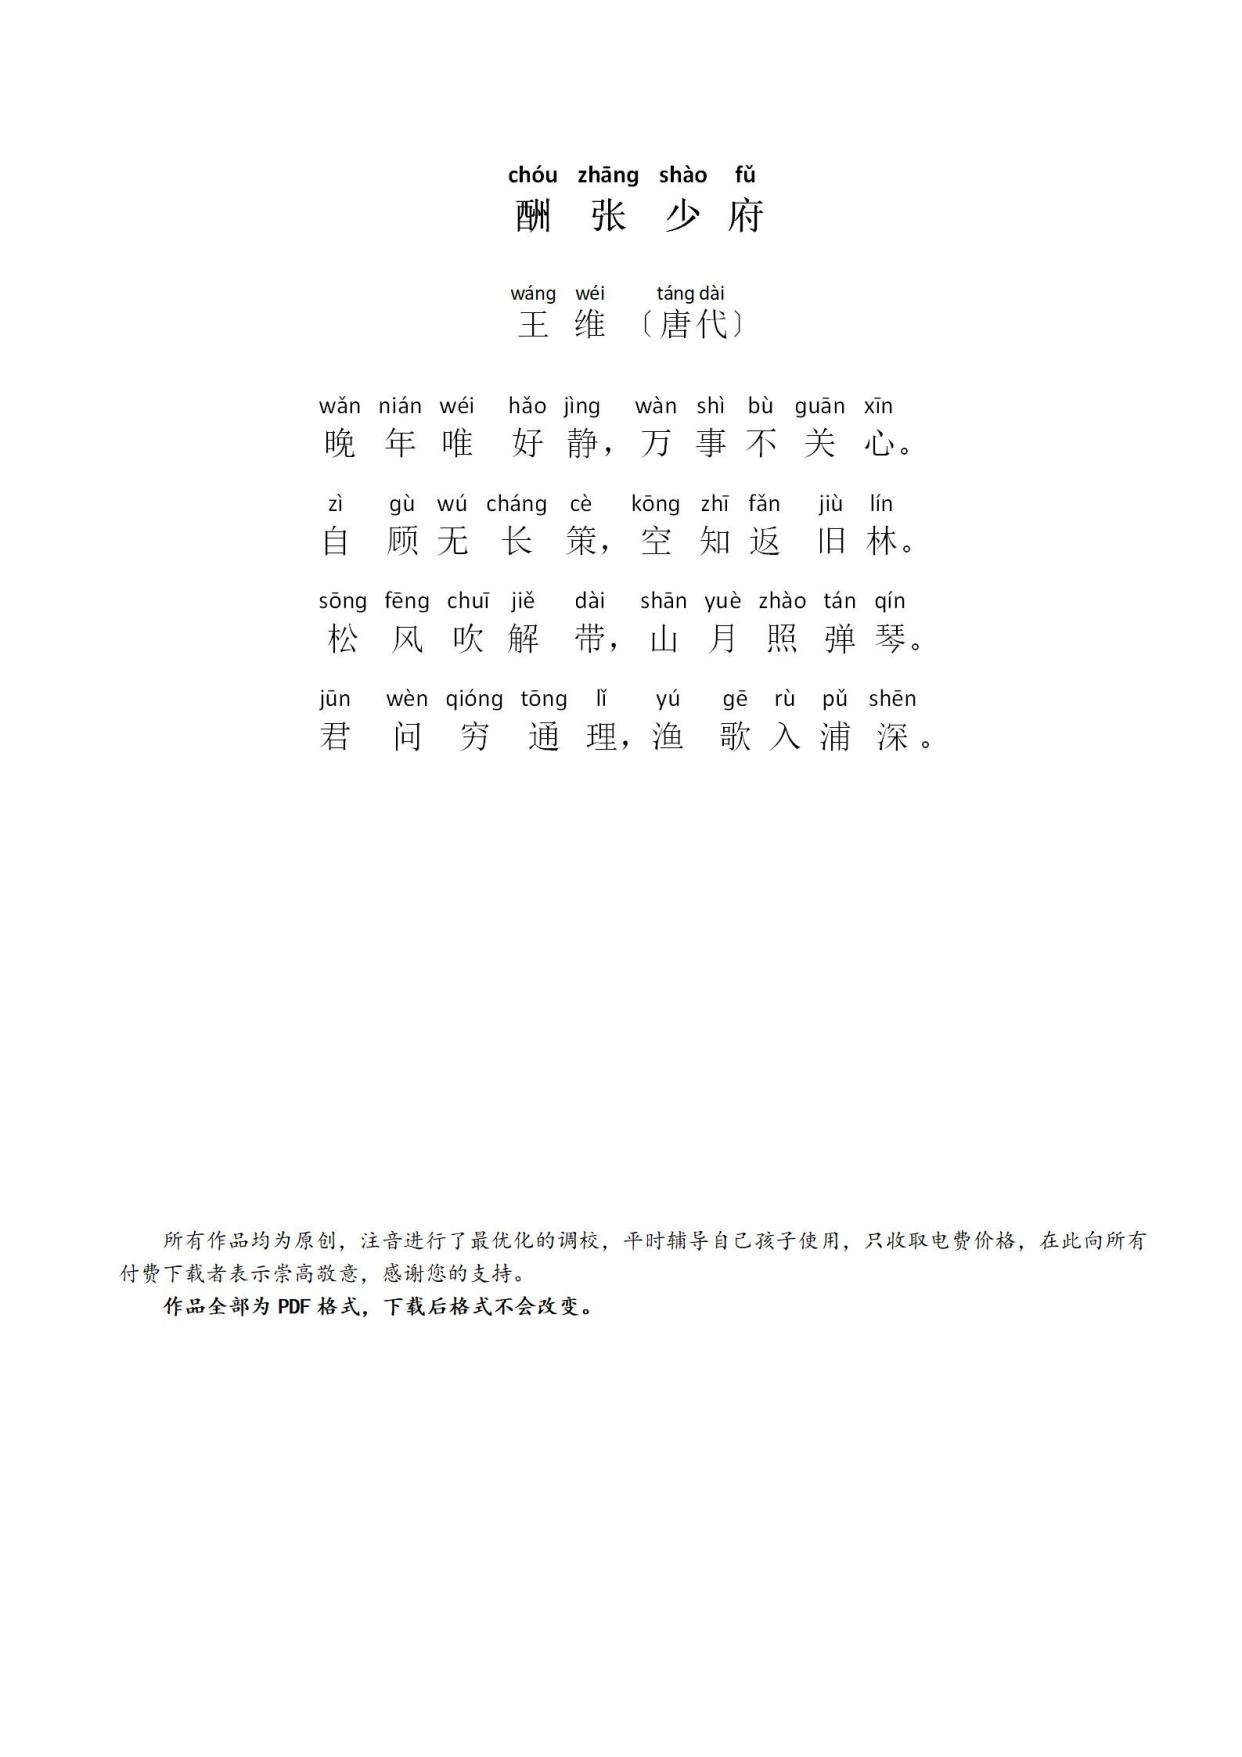 湘江曲拼音版图片